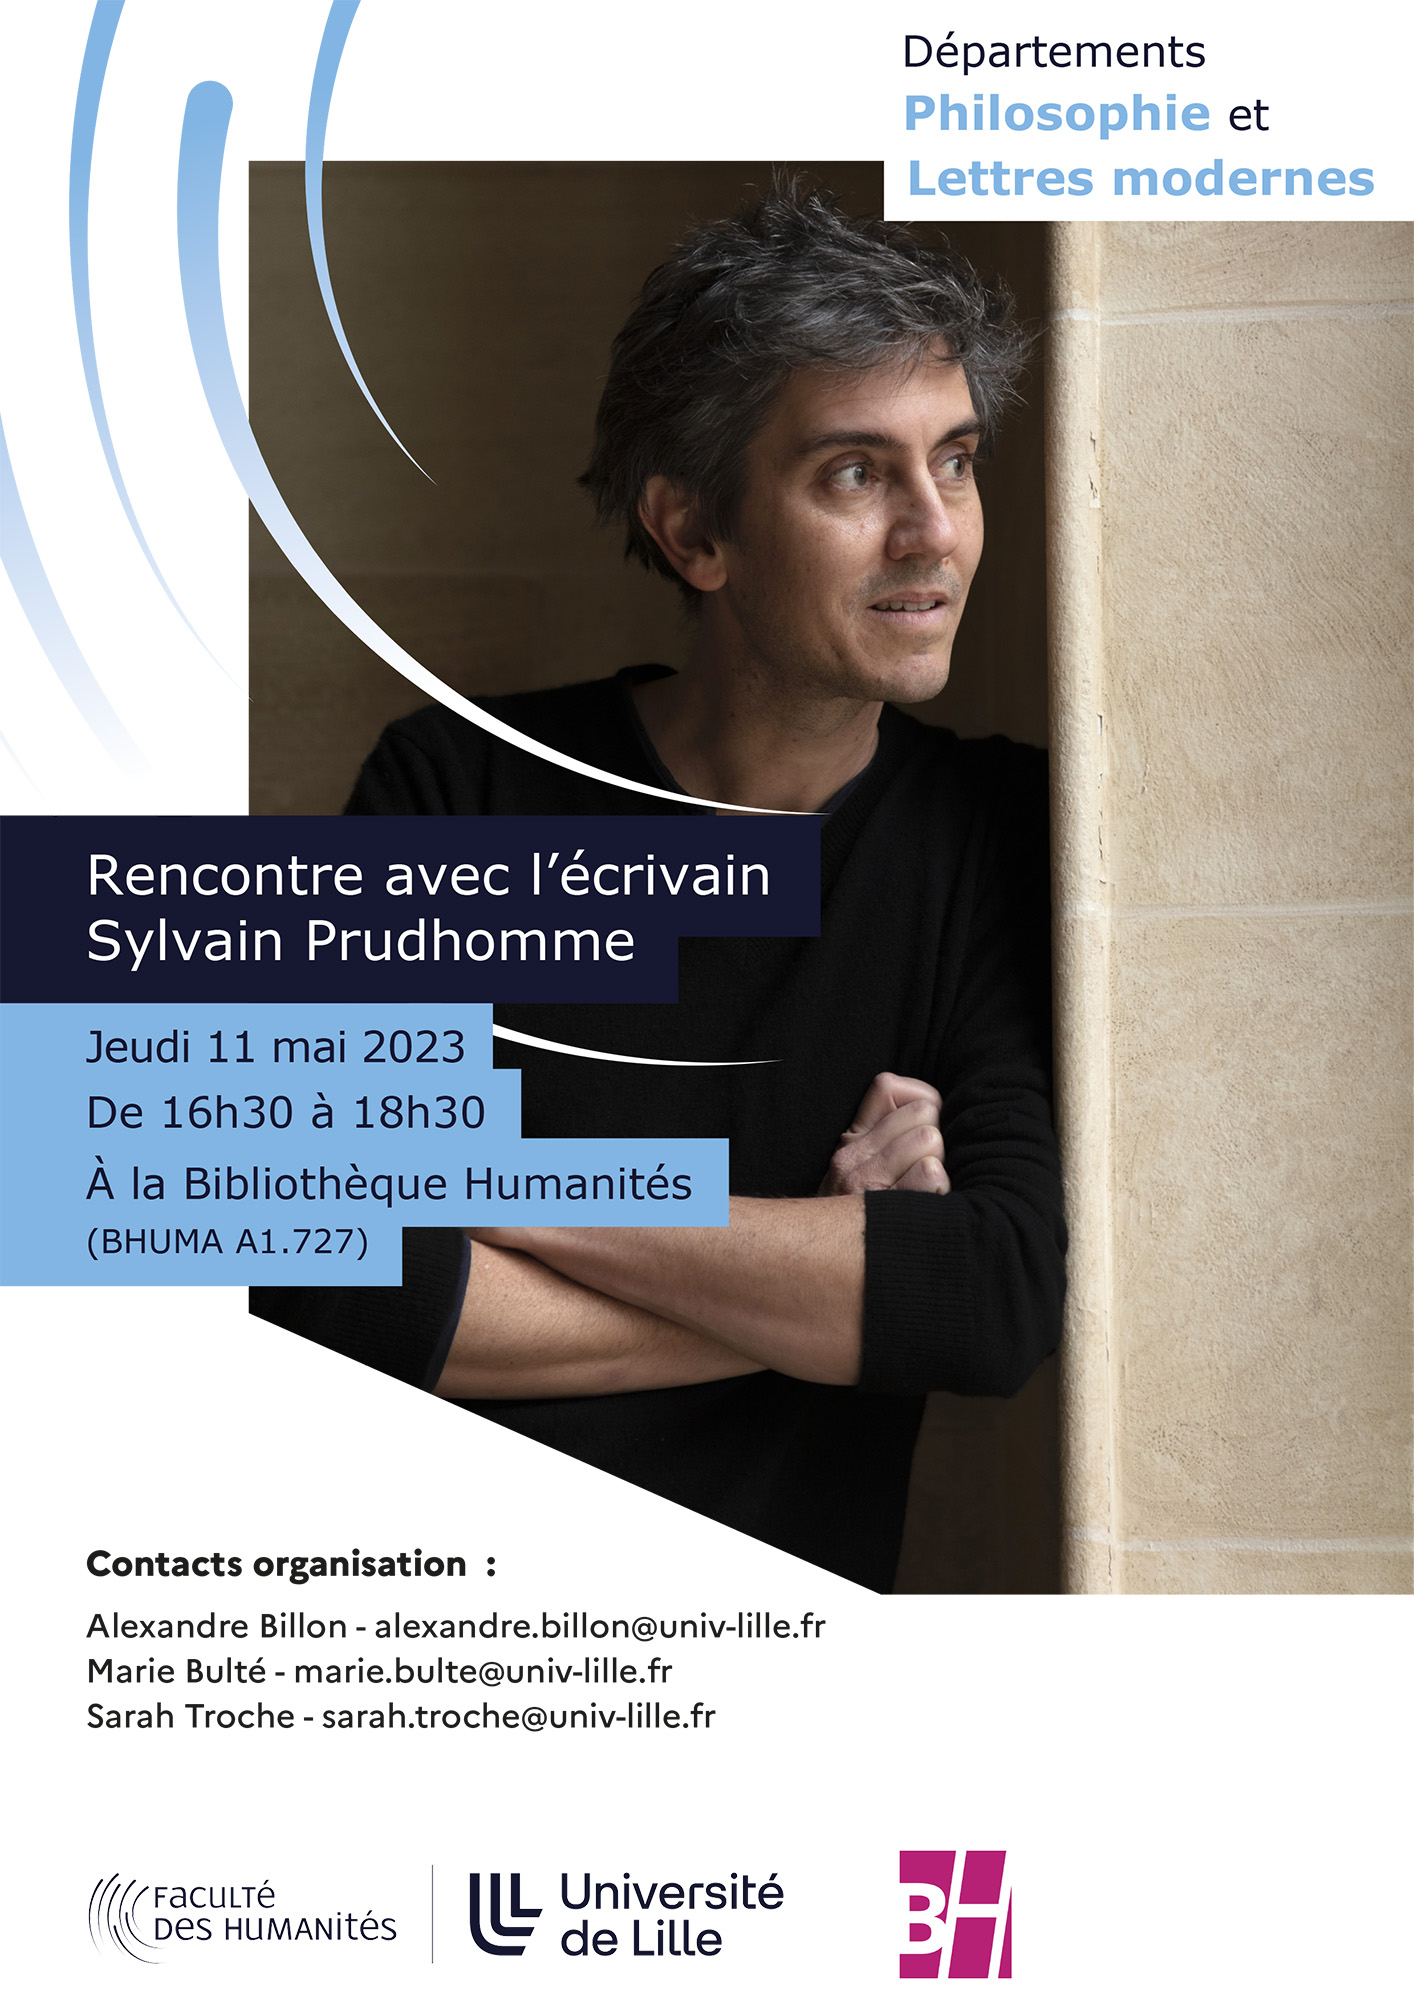 Rencontre avec Sylvain Prudhomme